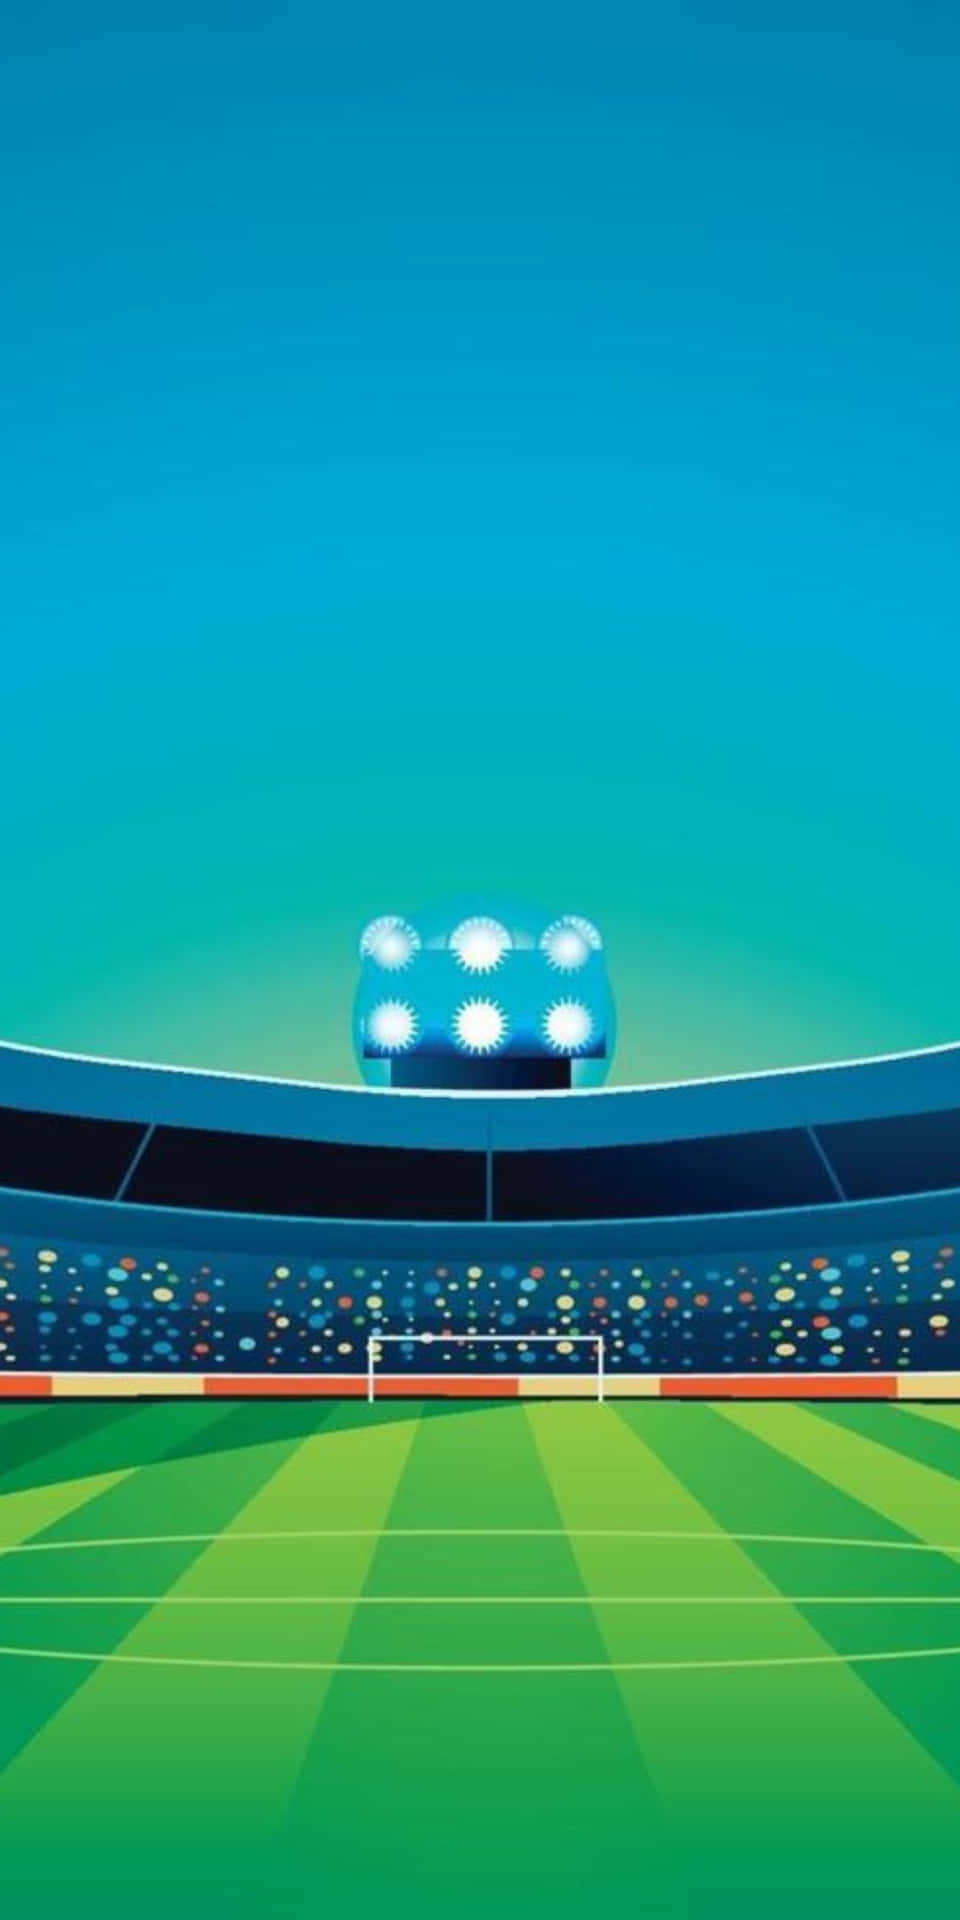 Sfondodi Illustrazione Del Campo Di Calcio Per Pixel 3.